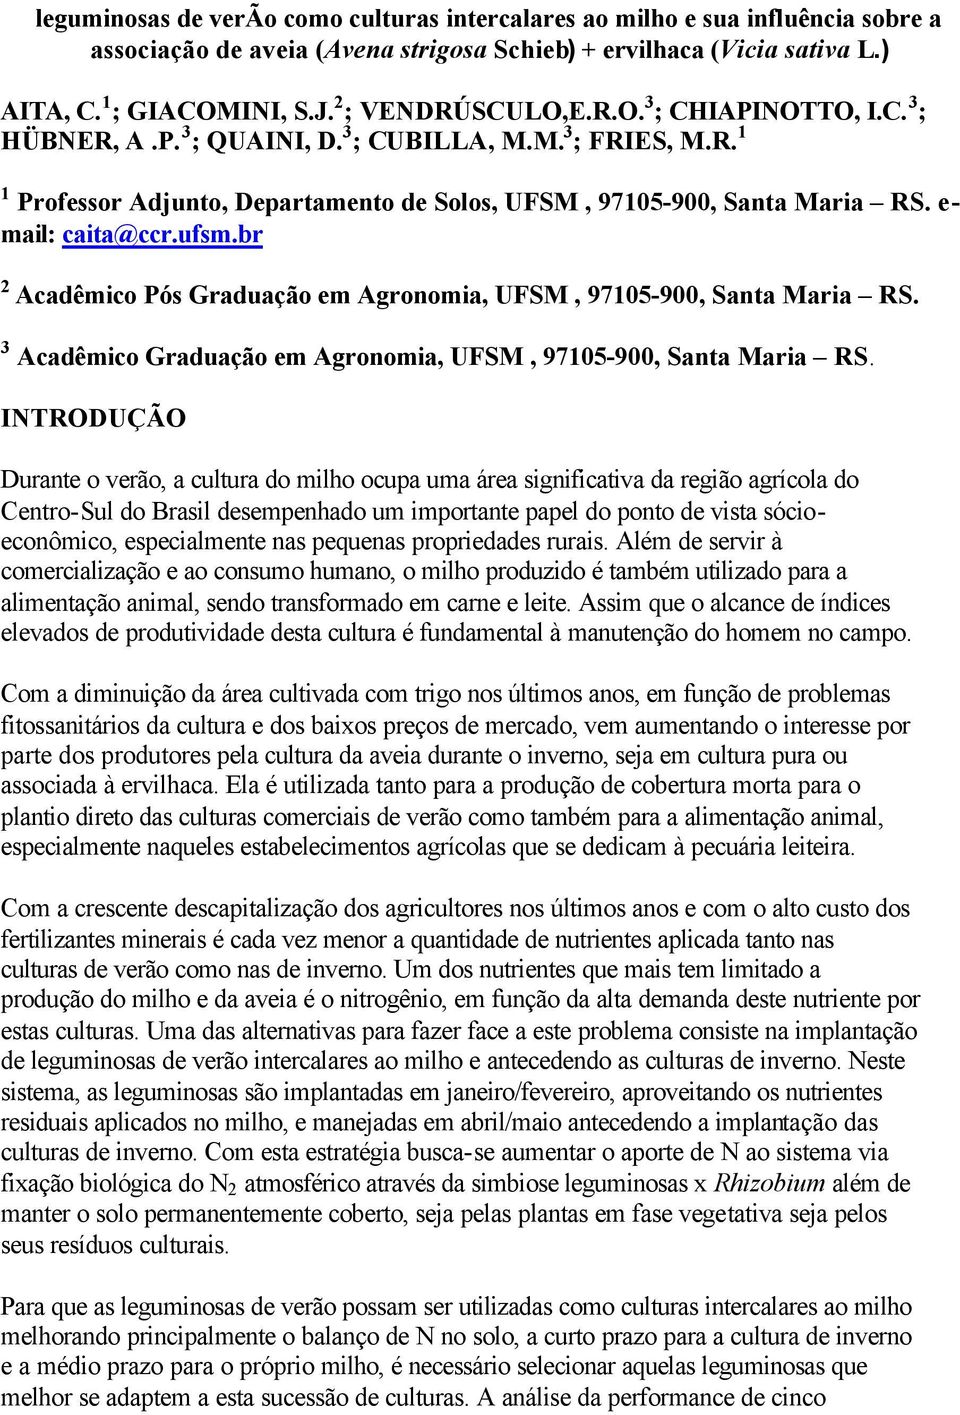 e- mail: caita@ccr.ufsm.br 2 Acadêmico Pós Graduação em Agronomia, UFSM, 97105-900, Santa Maria RS. 3 Acadêmico Graduação em Agronomia, UFSM, 97105-900, Santa Maria RS.